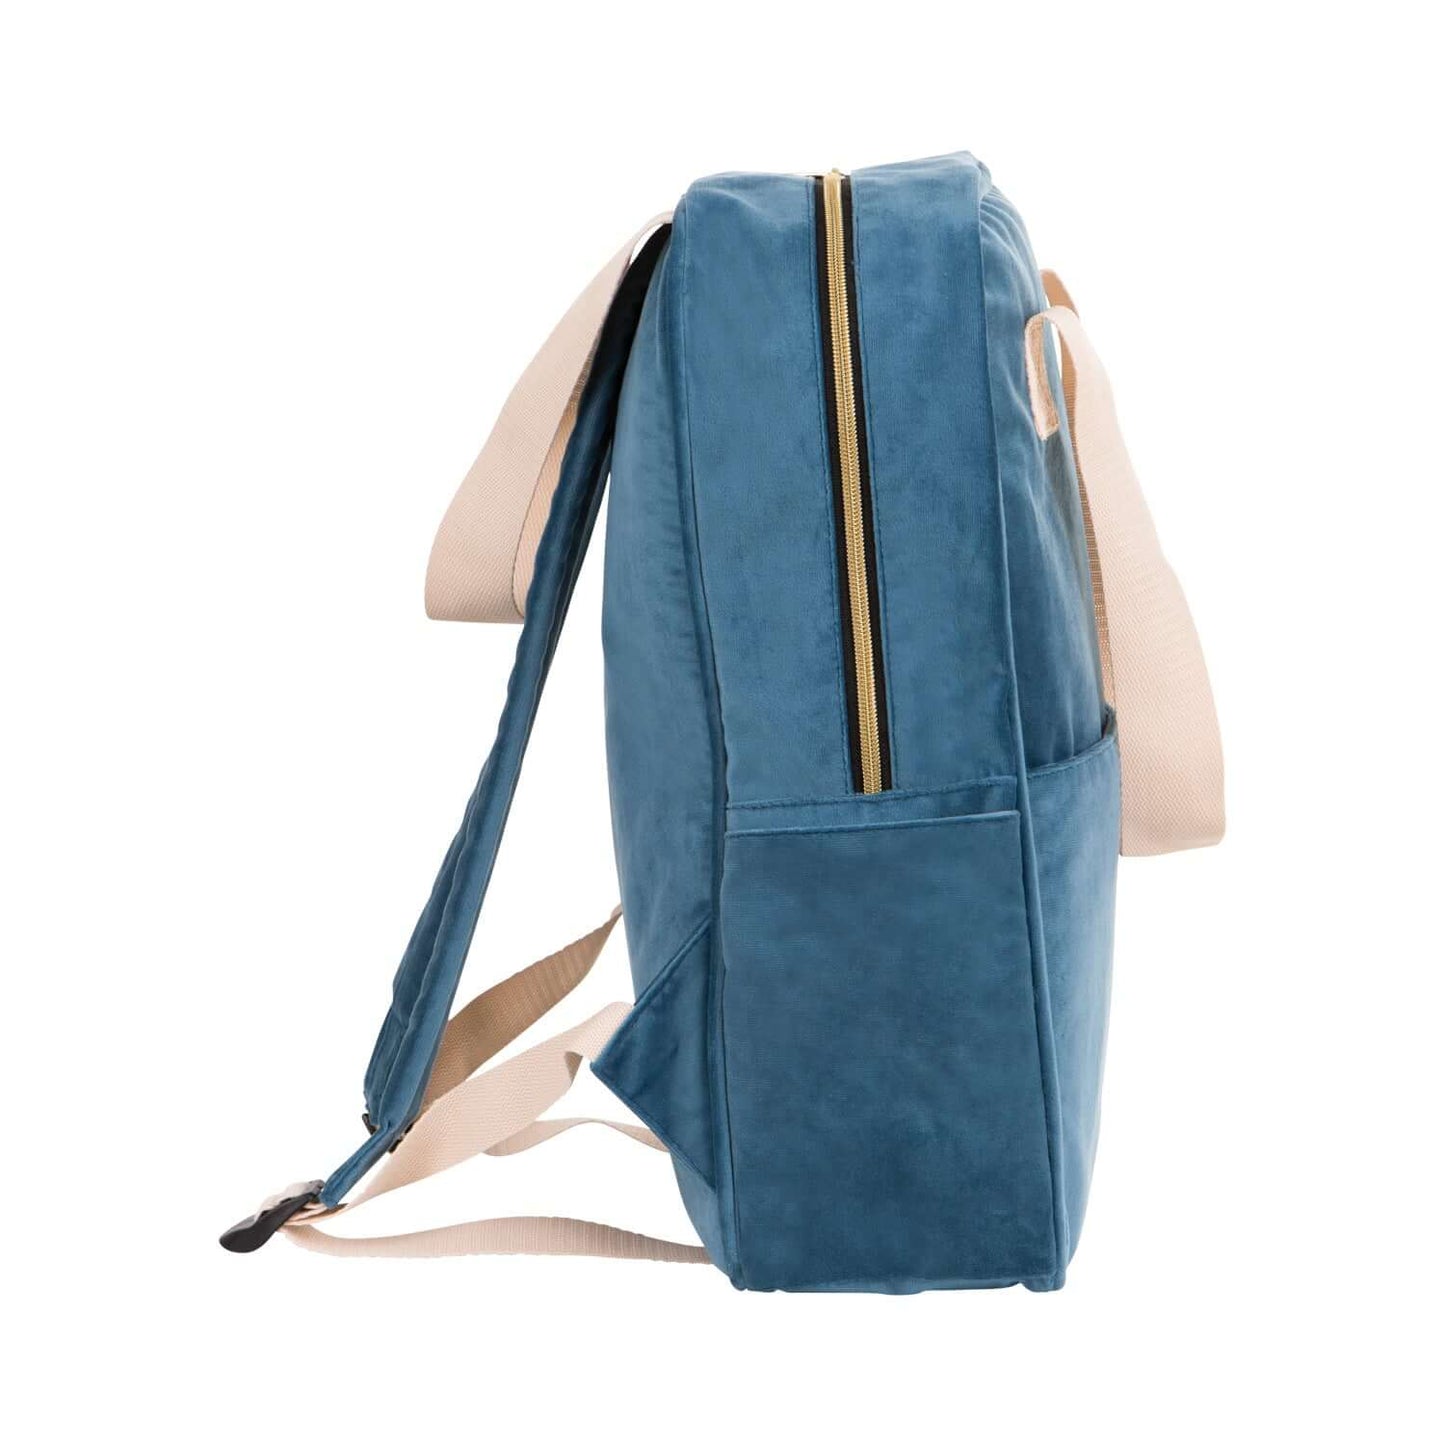 Duży plecak welurowy niebieski od Bettys Home z boku, plecak do szkoły dla dziewczynki, plecak do samolotu bagaż podręczny